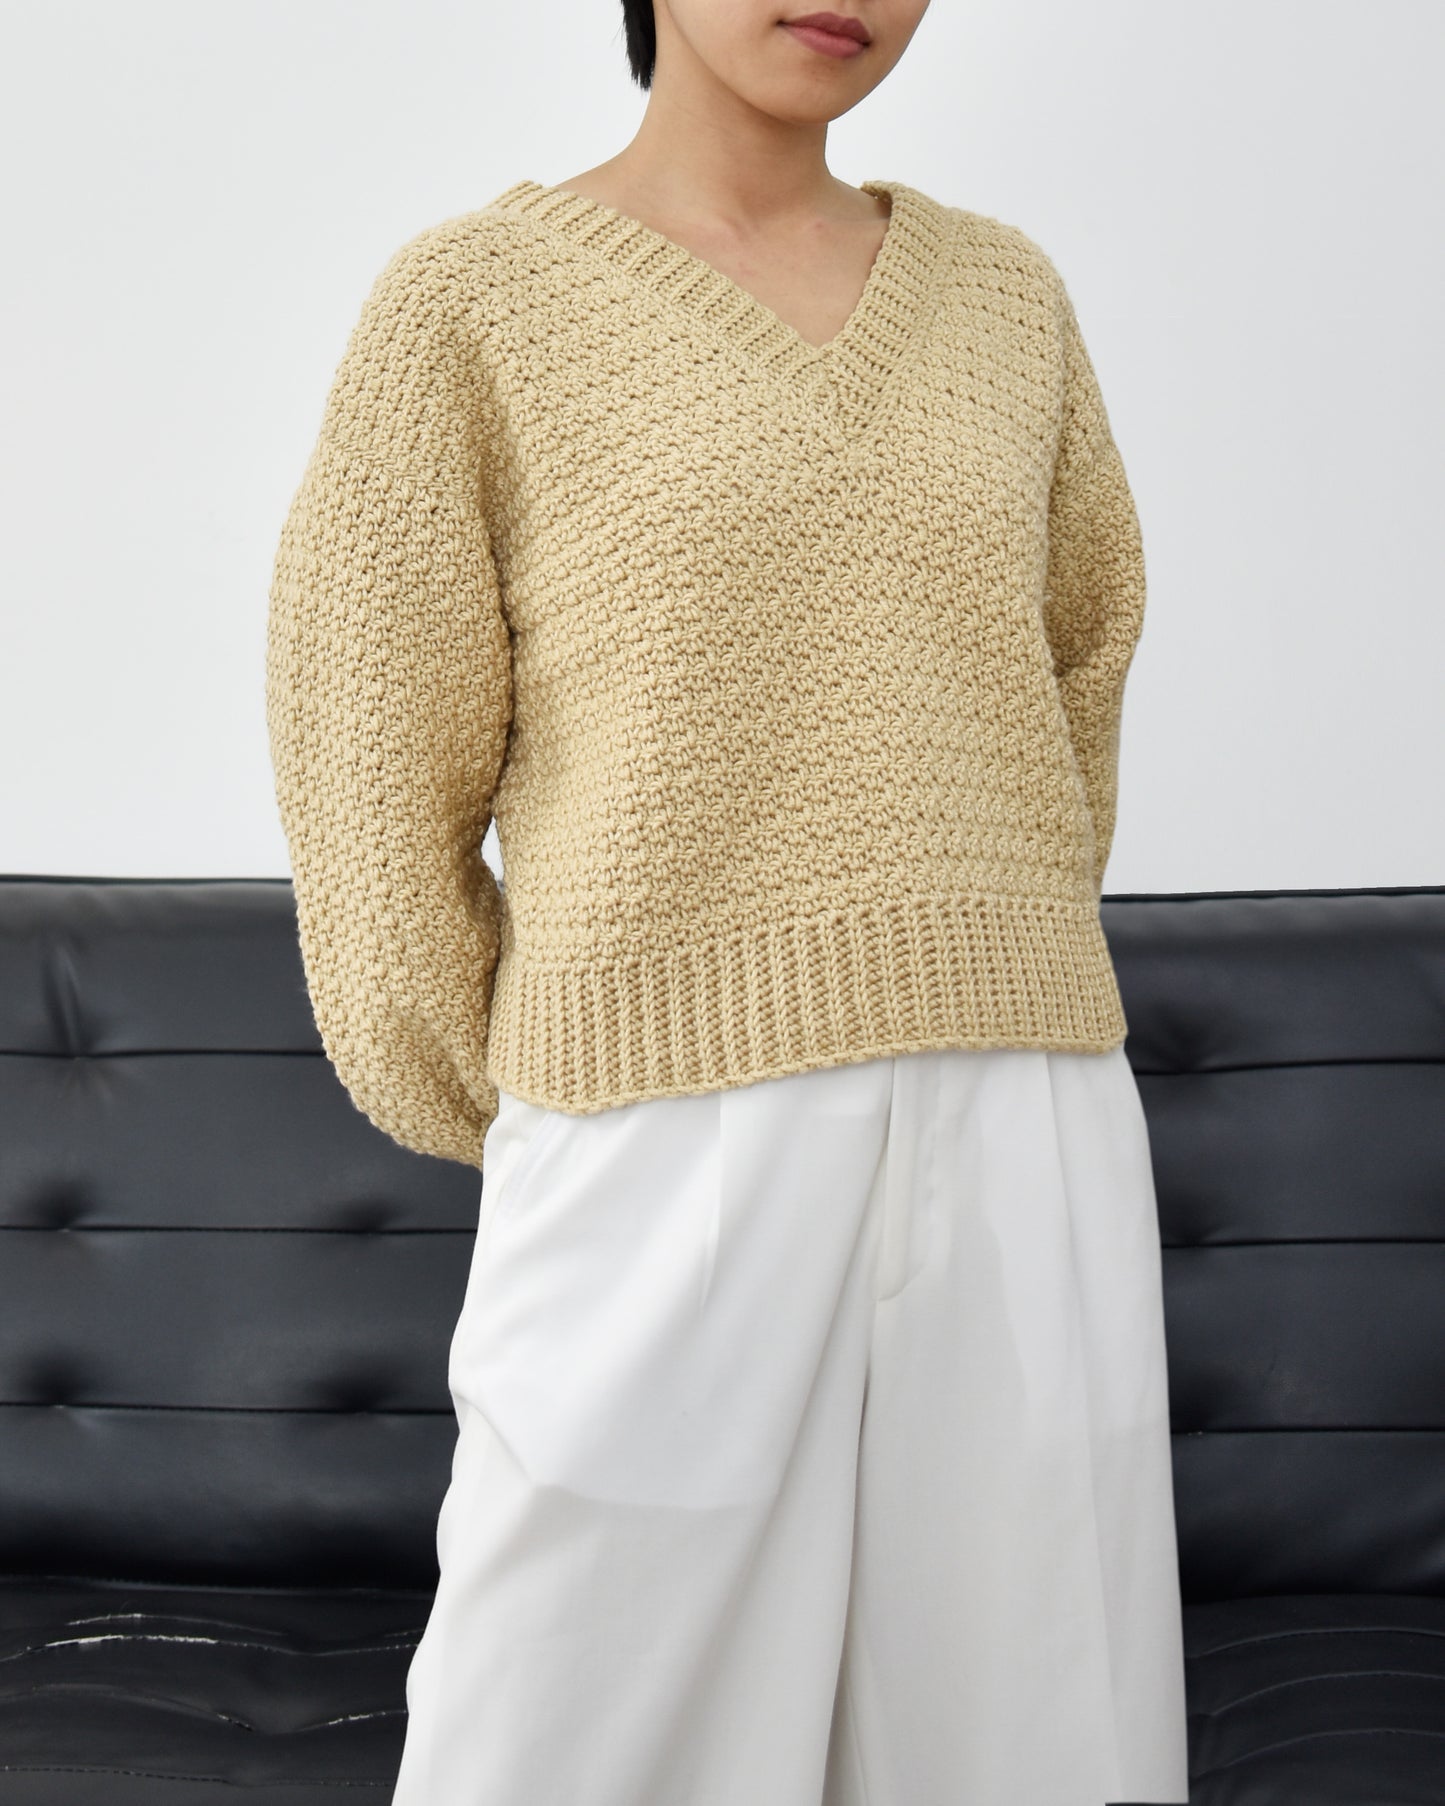 Sweater No.28 | Easy crochet pattern